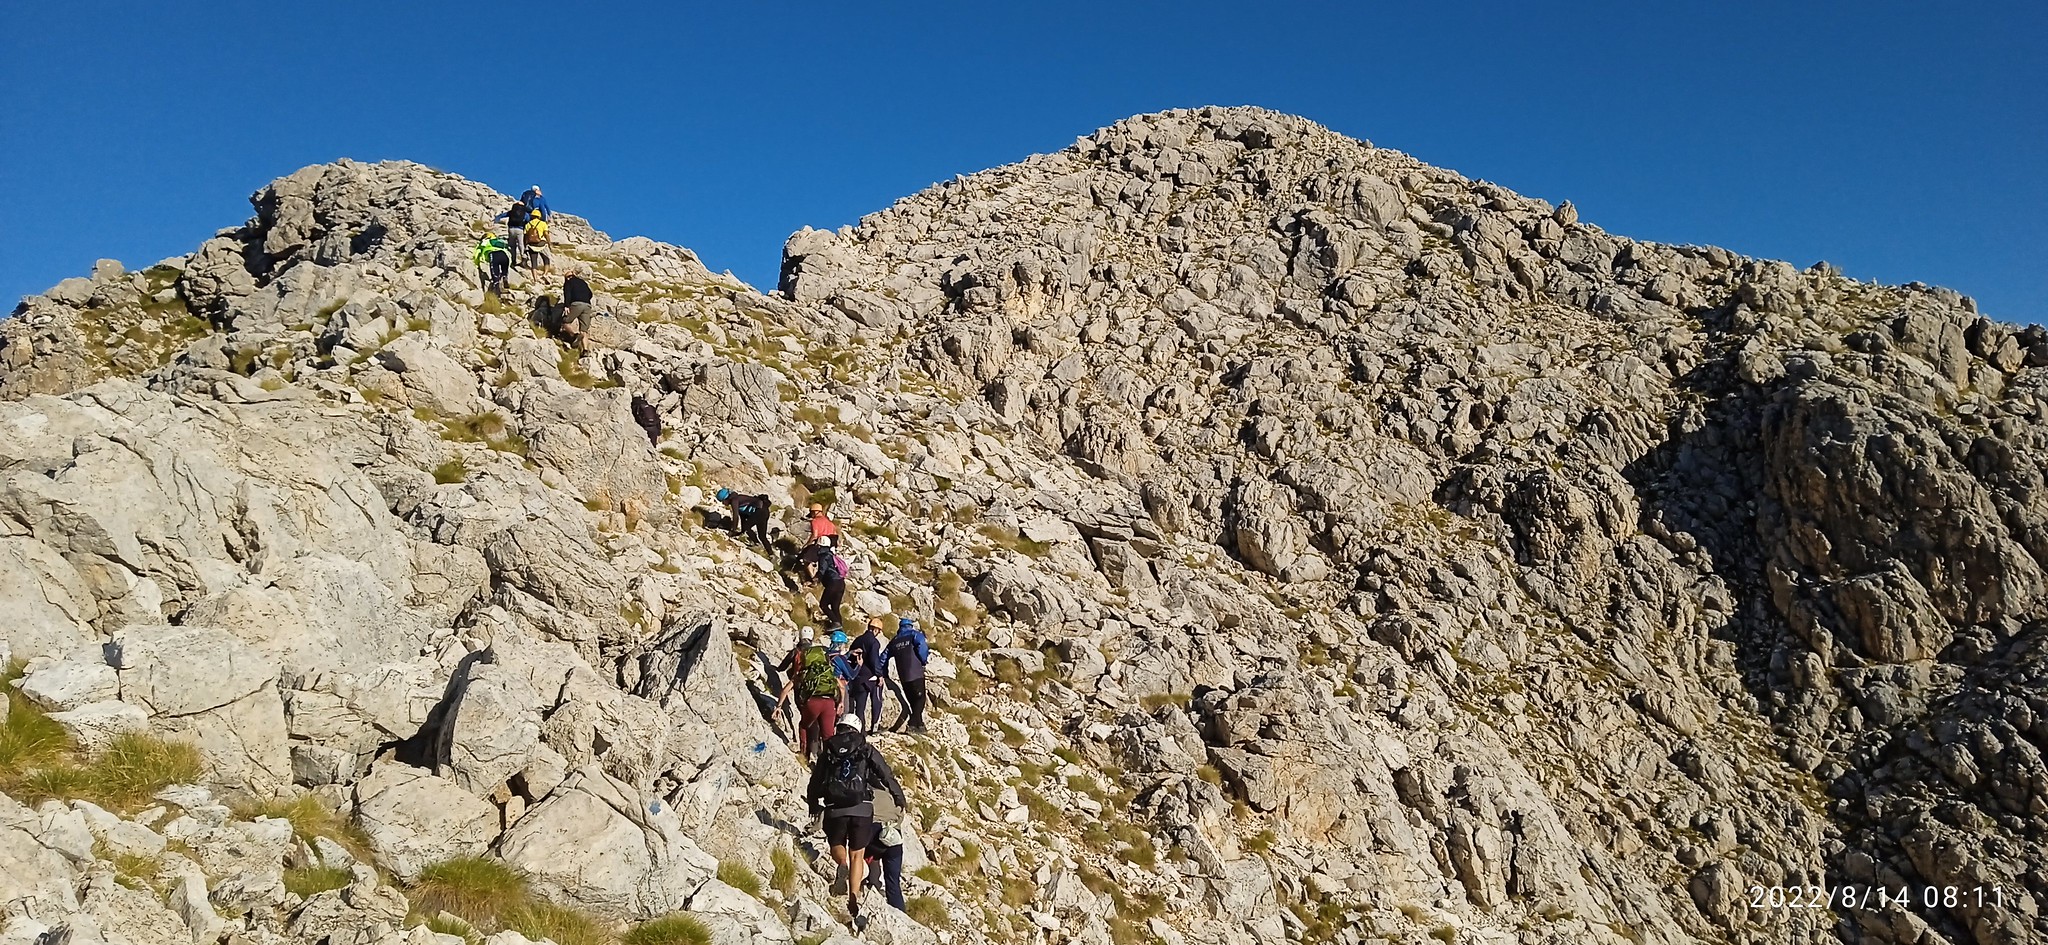 ΕΟΣ Καλαμάτας: Διήμερη εξόρμηση σε κορυφές του Ταϋγέτου και στο Φαράγγι του Ριντόμου